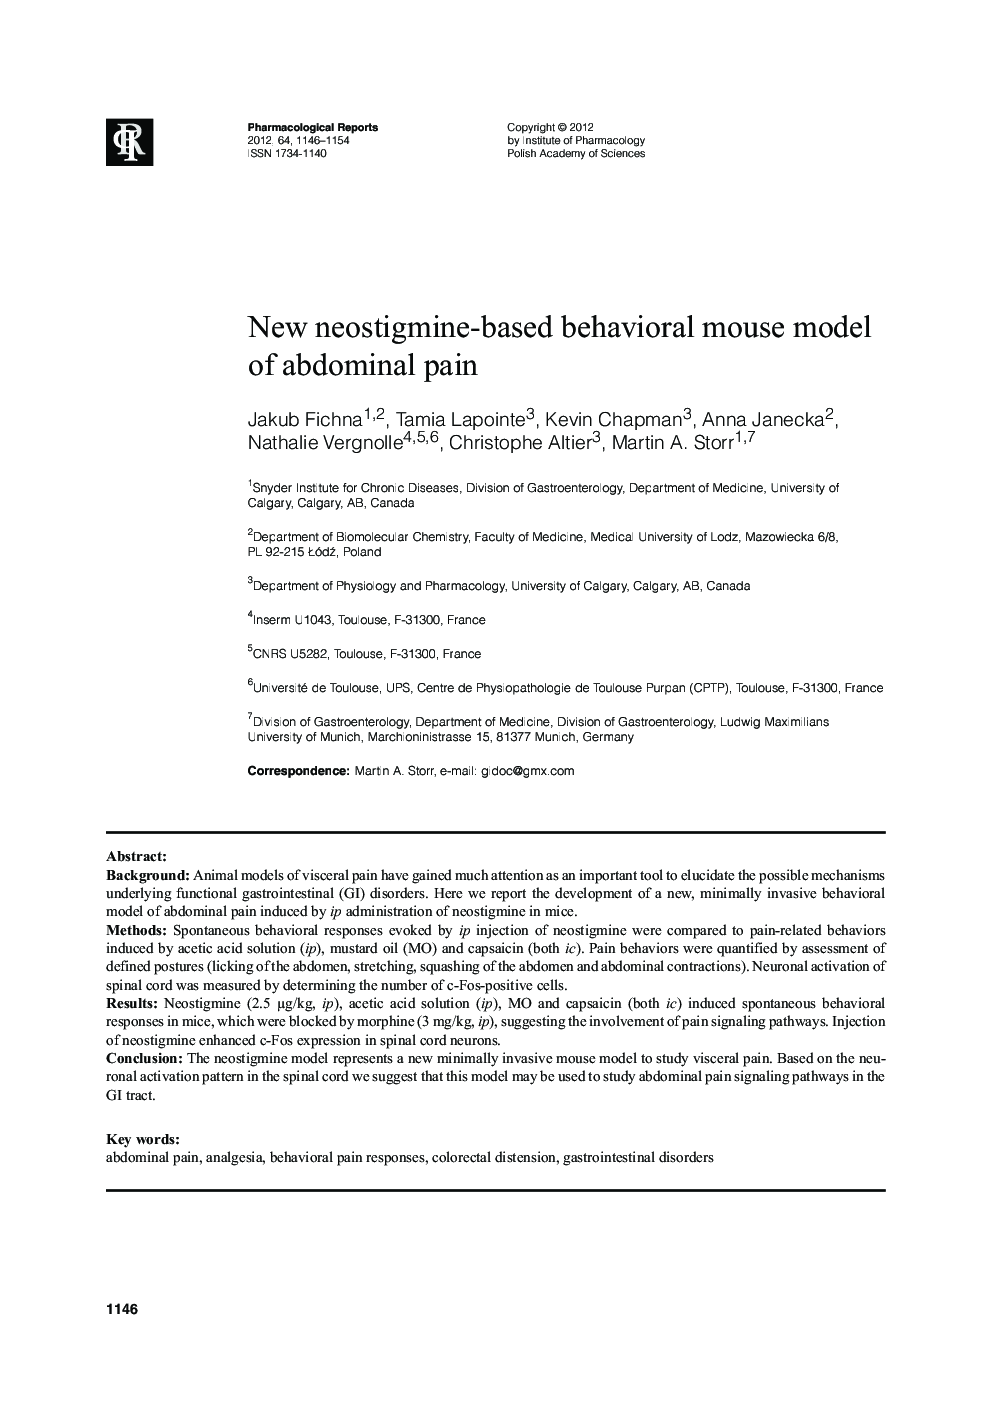 New neostigmine-based behavioral mouse model of abdominal pain